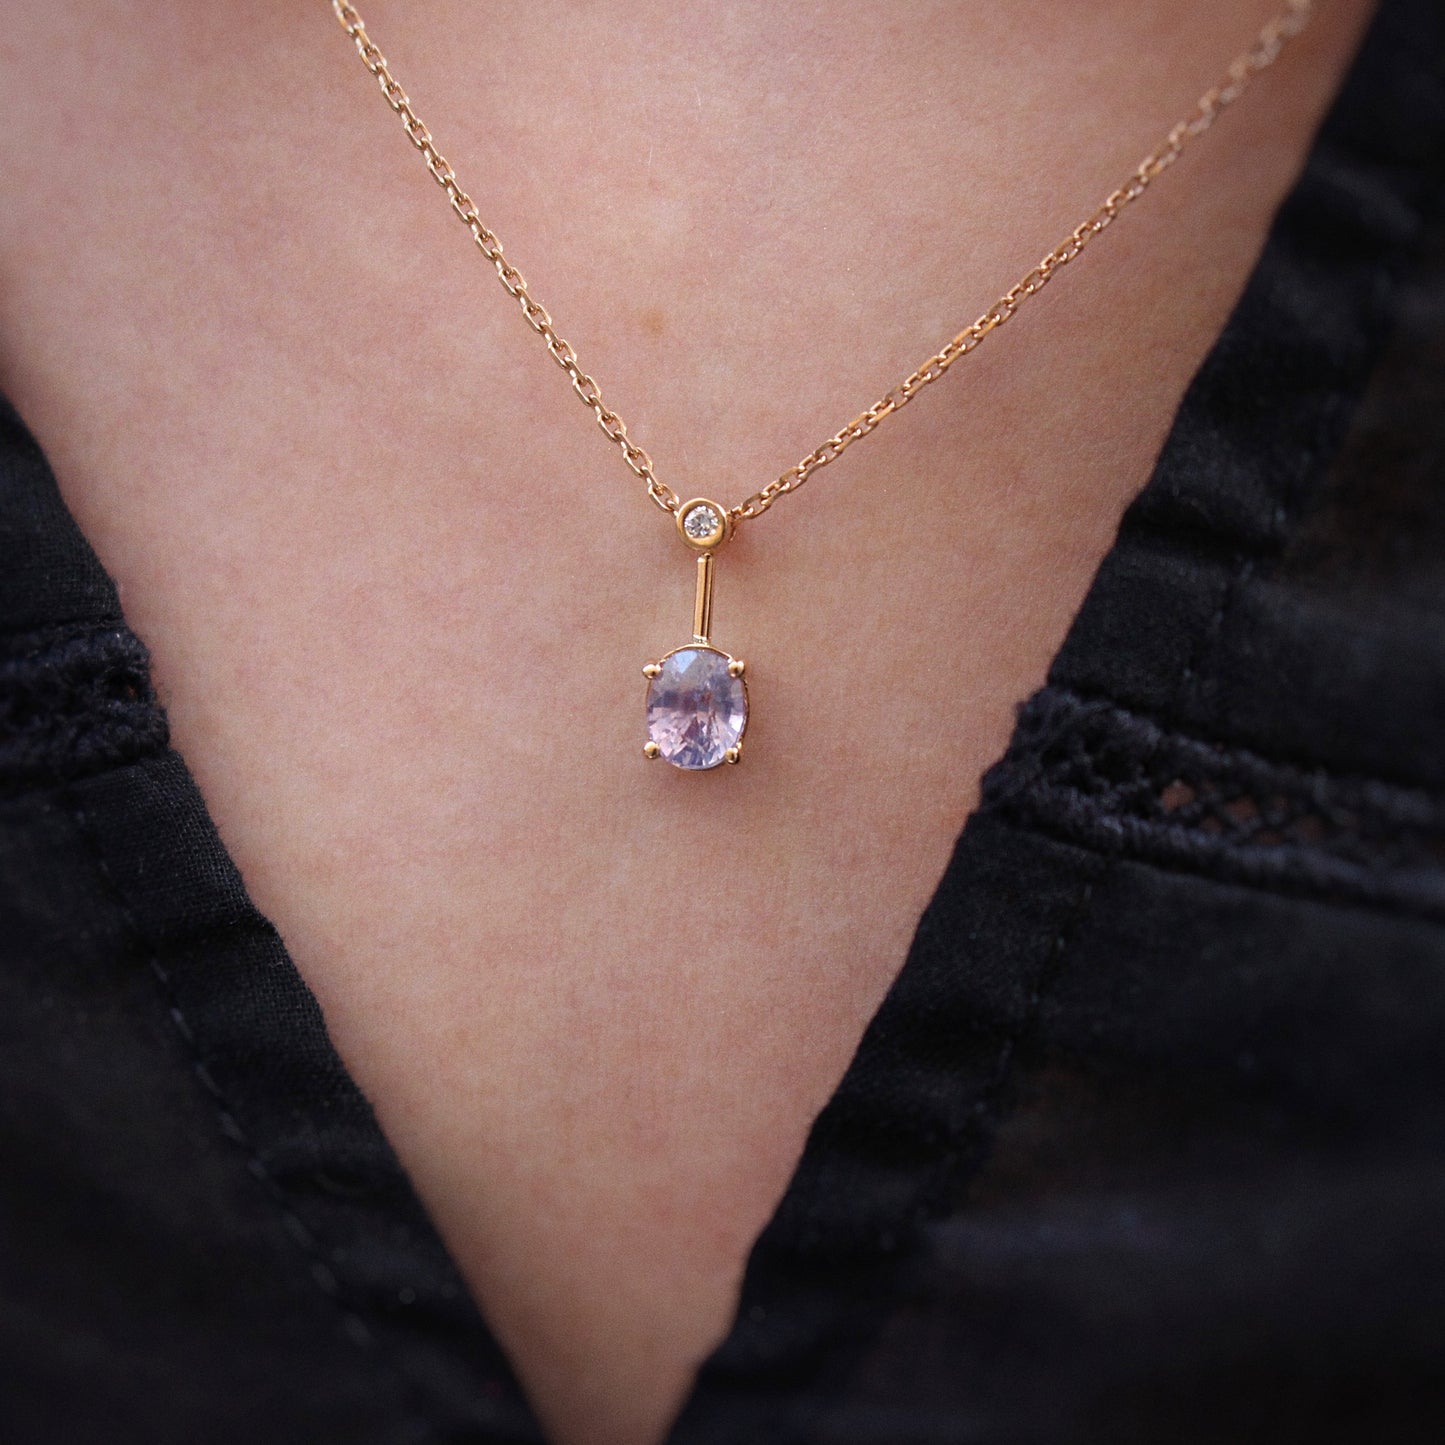 Magnifique pendentif avec un saphir couleur lilas et un diamant